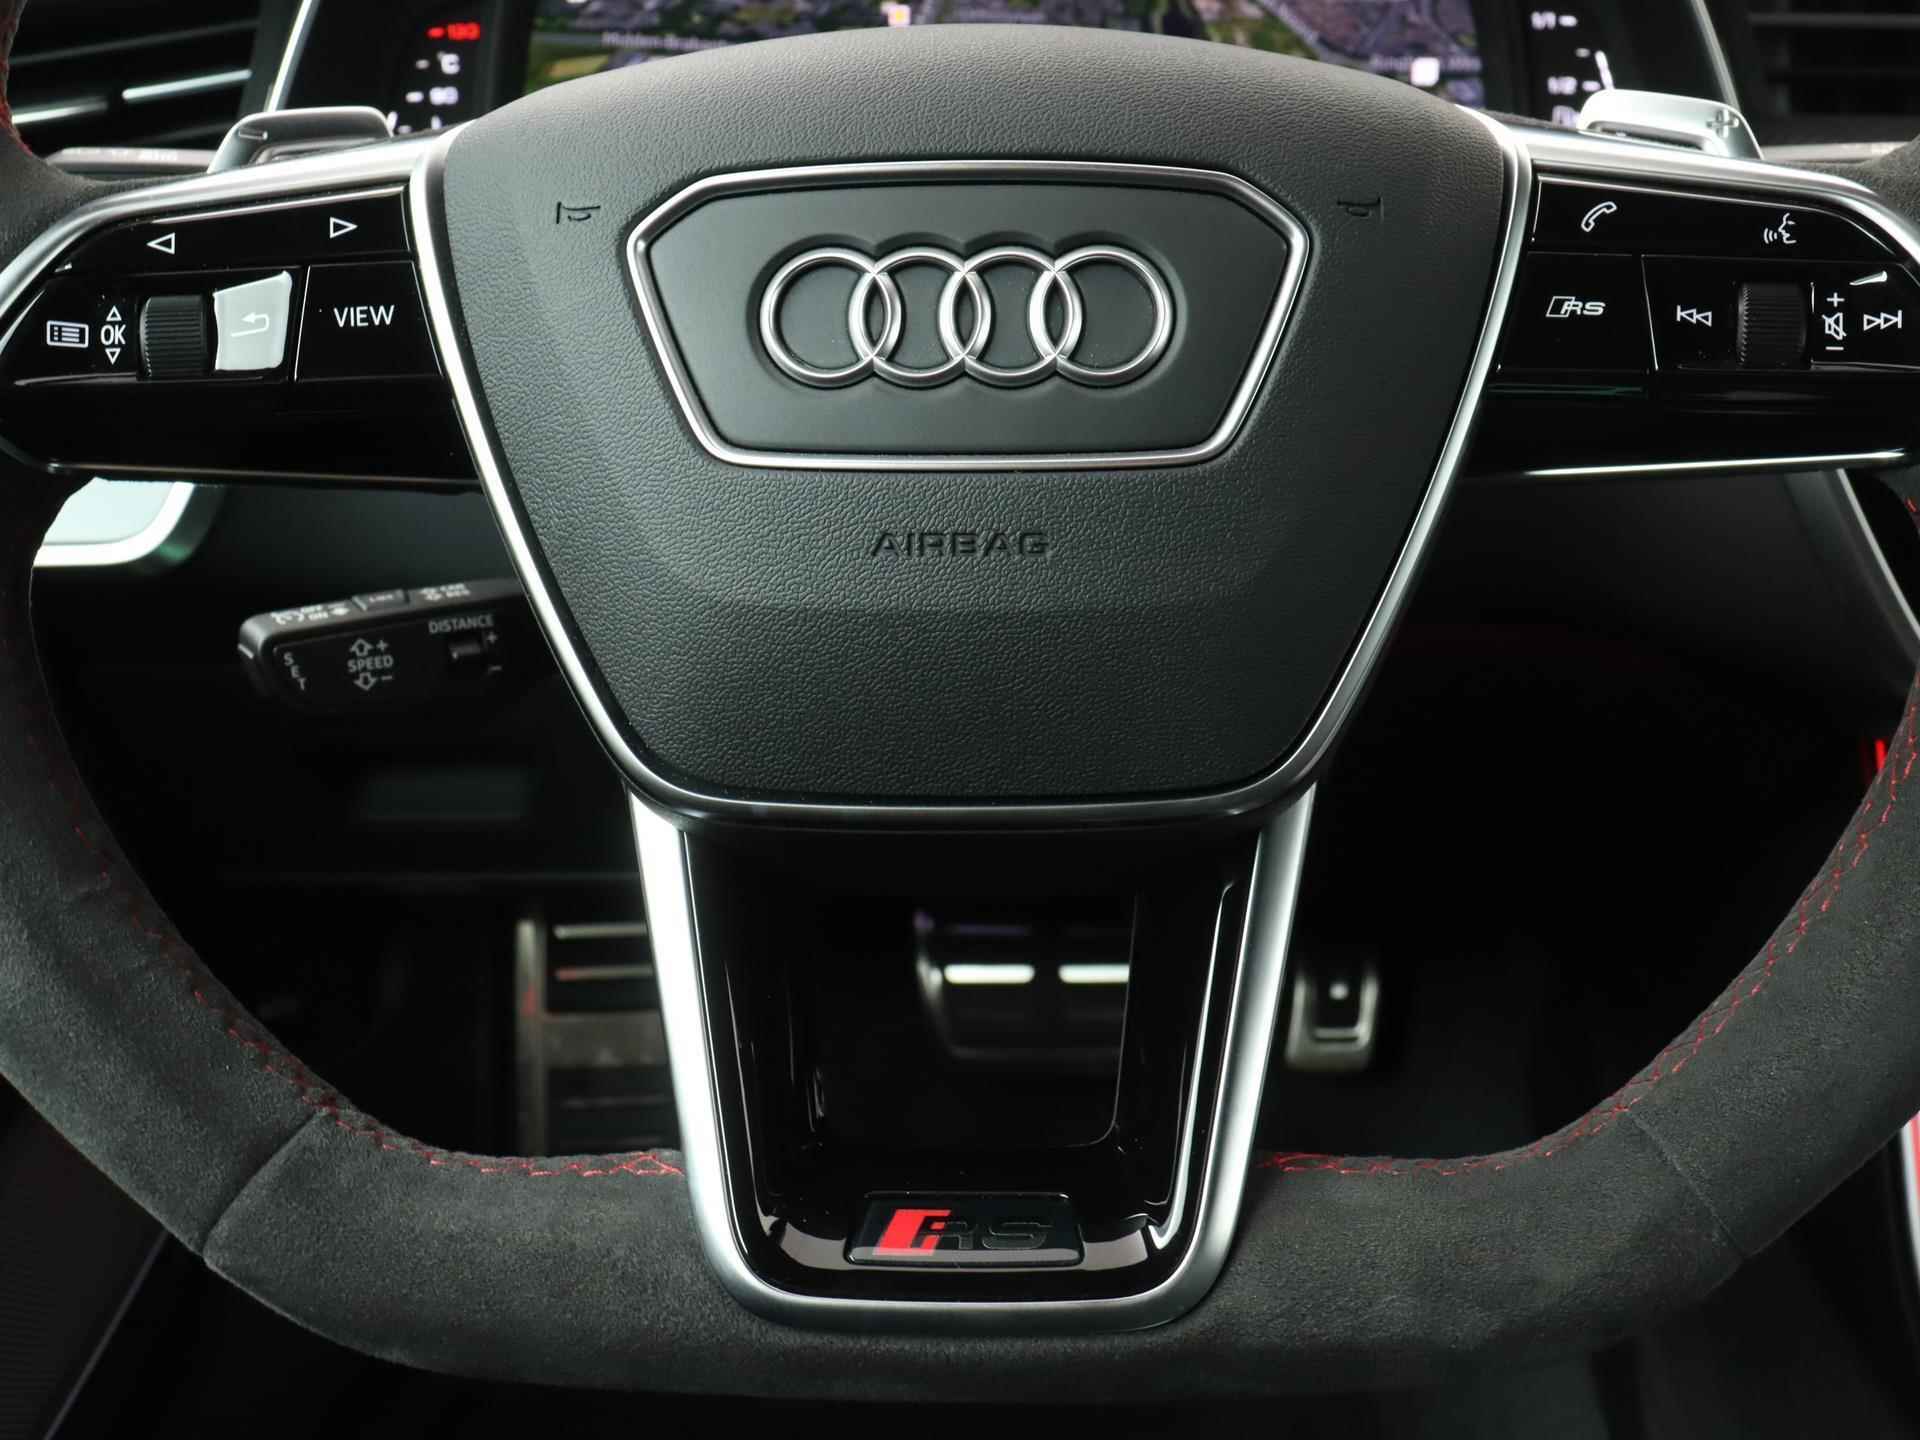 Audi RS6 TFSI quattro 600 PK | Head-up display | Bang & Olufsen Soundsystem | 22 inch lm velgen | RS Dynamic Pakket Plus | RS Design pakket Rood |Optiekpakket Zwart Plus | Panorama dak | RS Sportuitlaat | Keramische remschijven Rood | RS Sportonderstel Plus | Servosluiting deuren | Nu € 36.129,- ACTIEKORTING! | DIRECT LEVERBAAR! | NIEUWE AUTO! | - 19/35